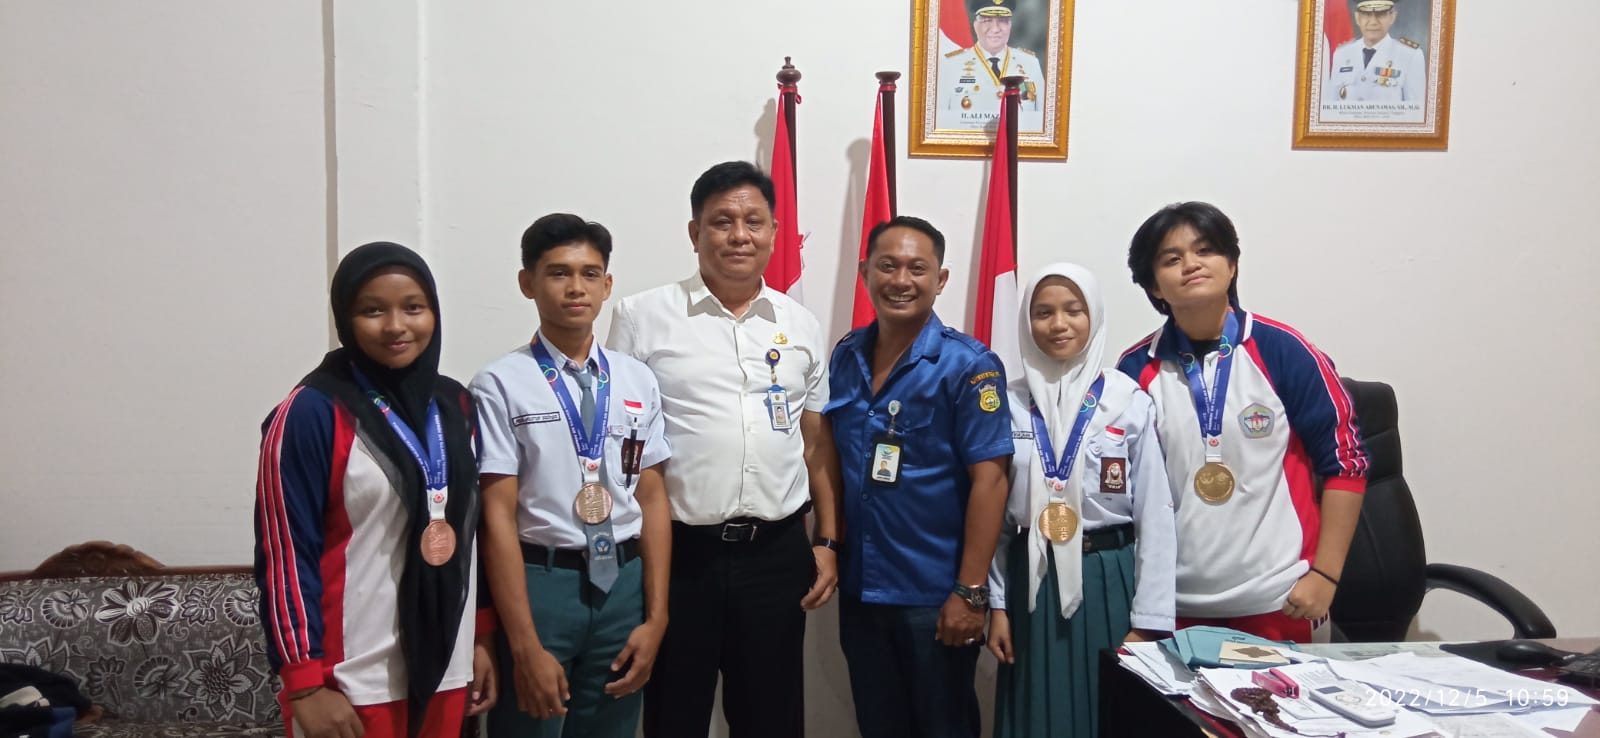 Kepala SMA Negeri 1 Baubau didampingi keempat siswanya yang berprestasi menerima kunjungan Ketua Persambi Sultra, Asrun Tandena.(foto murdin)